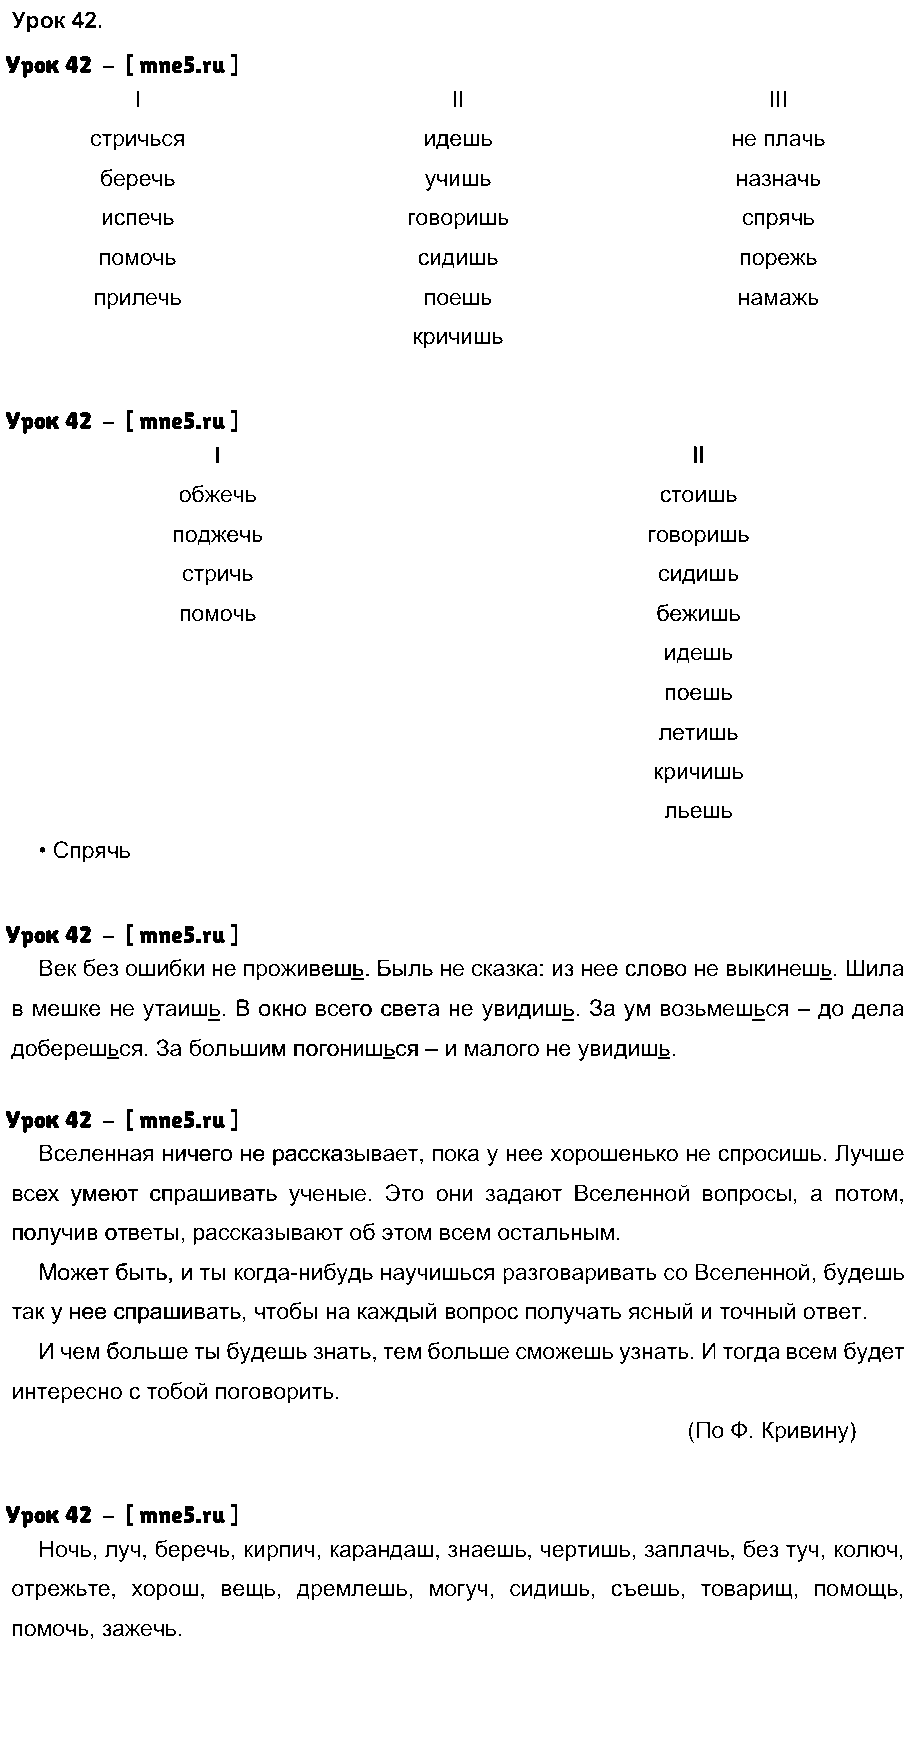 ГДЗ Русский язык 4 класс - Урок 42